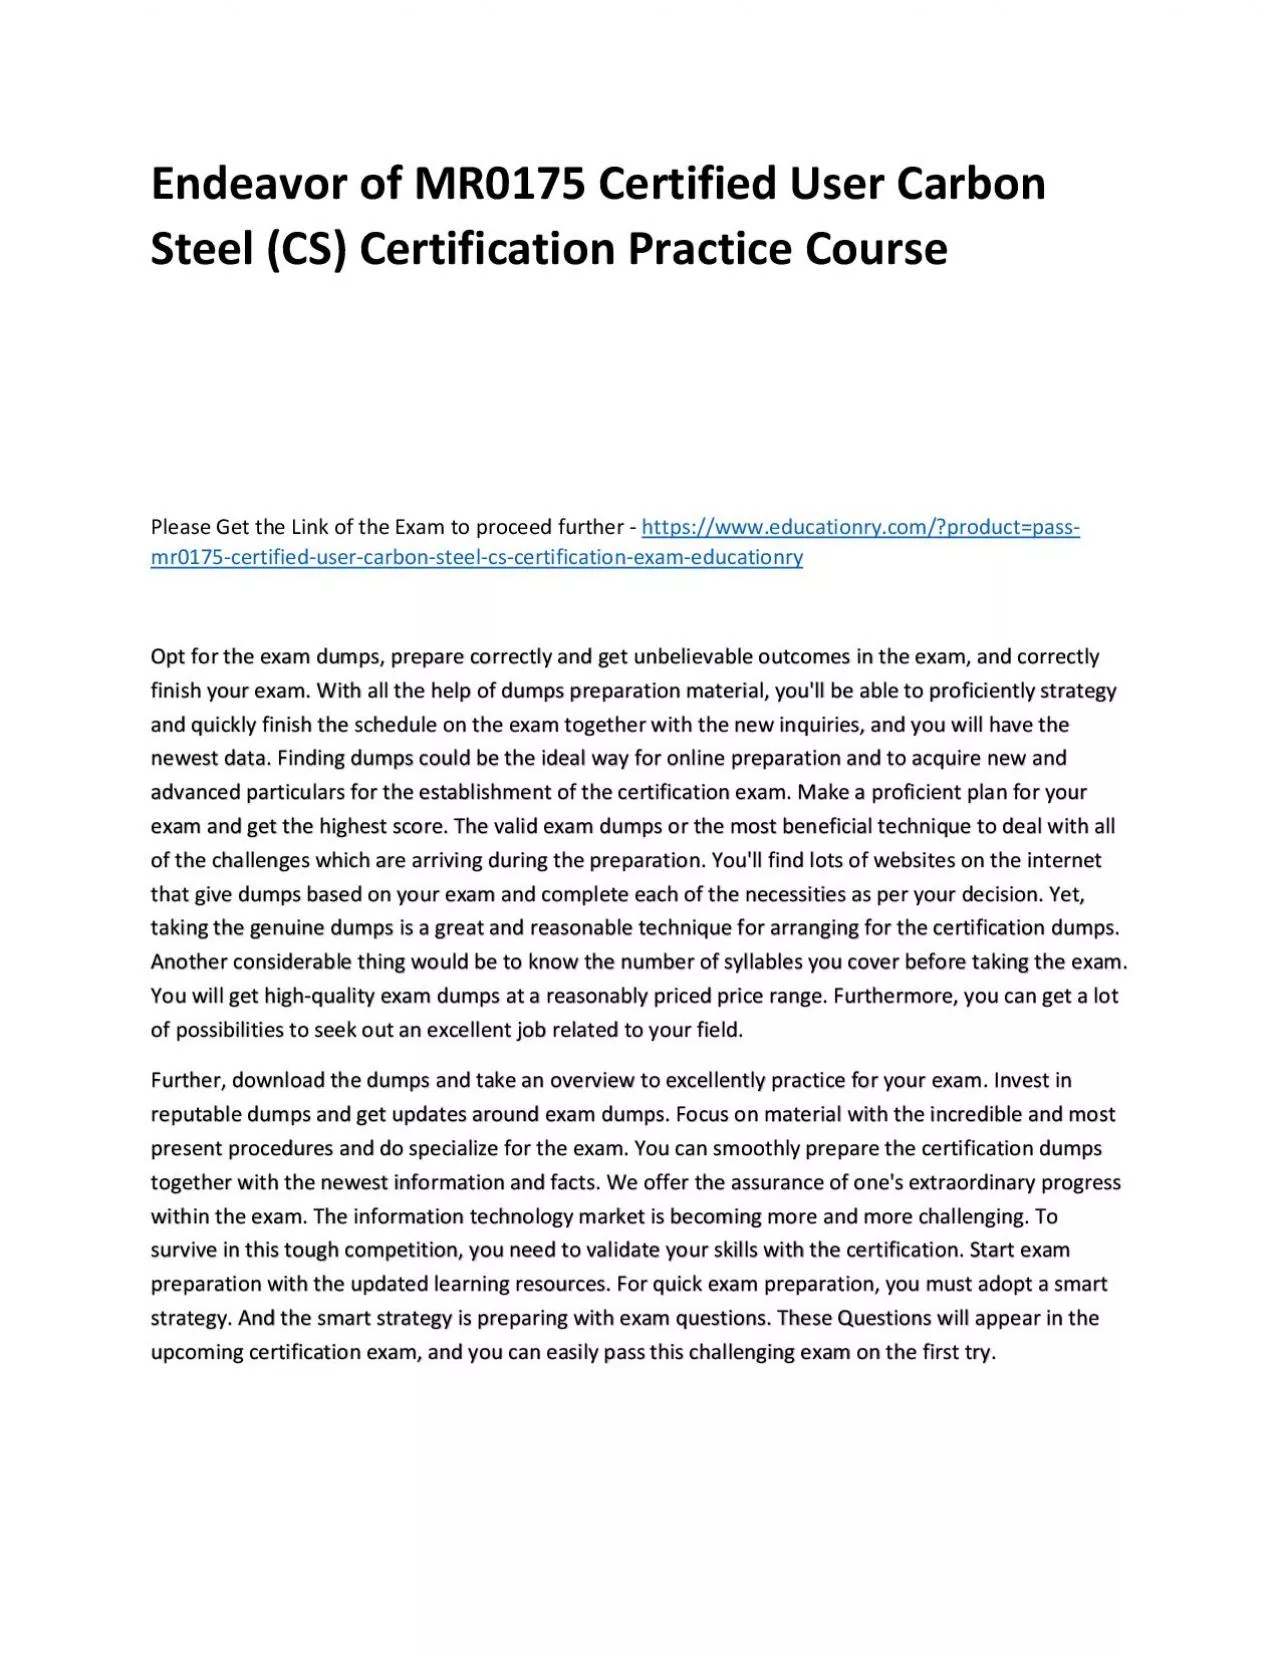 MR0175 Certified User Carbon Steel (CS) Certification